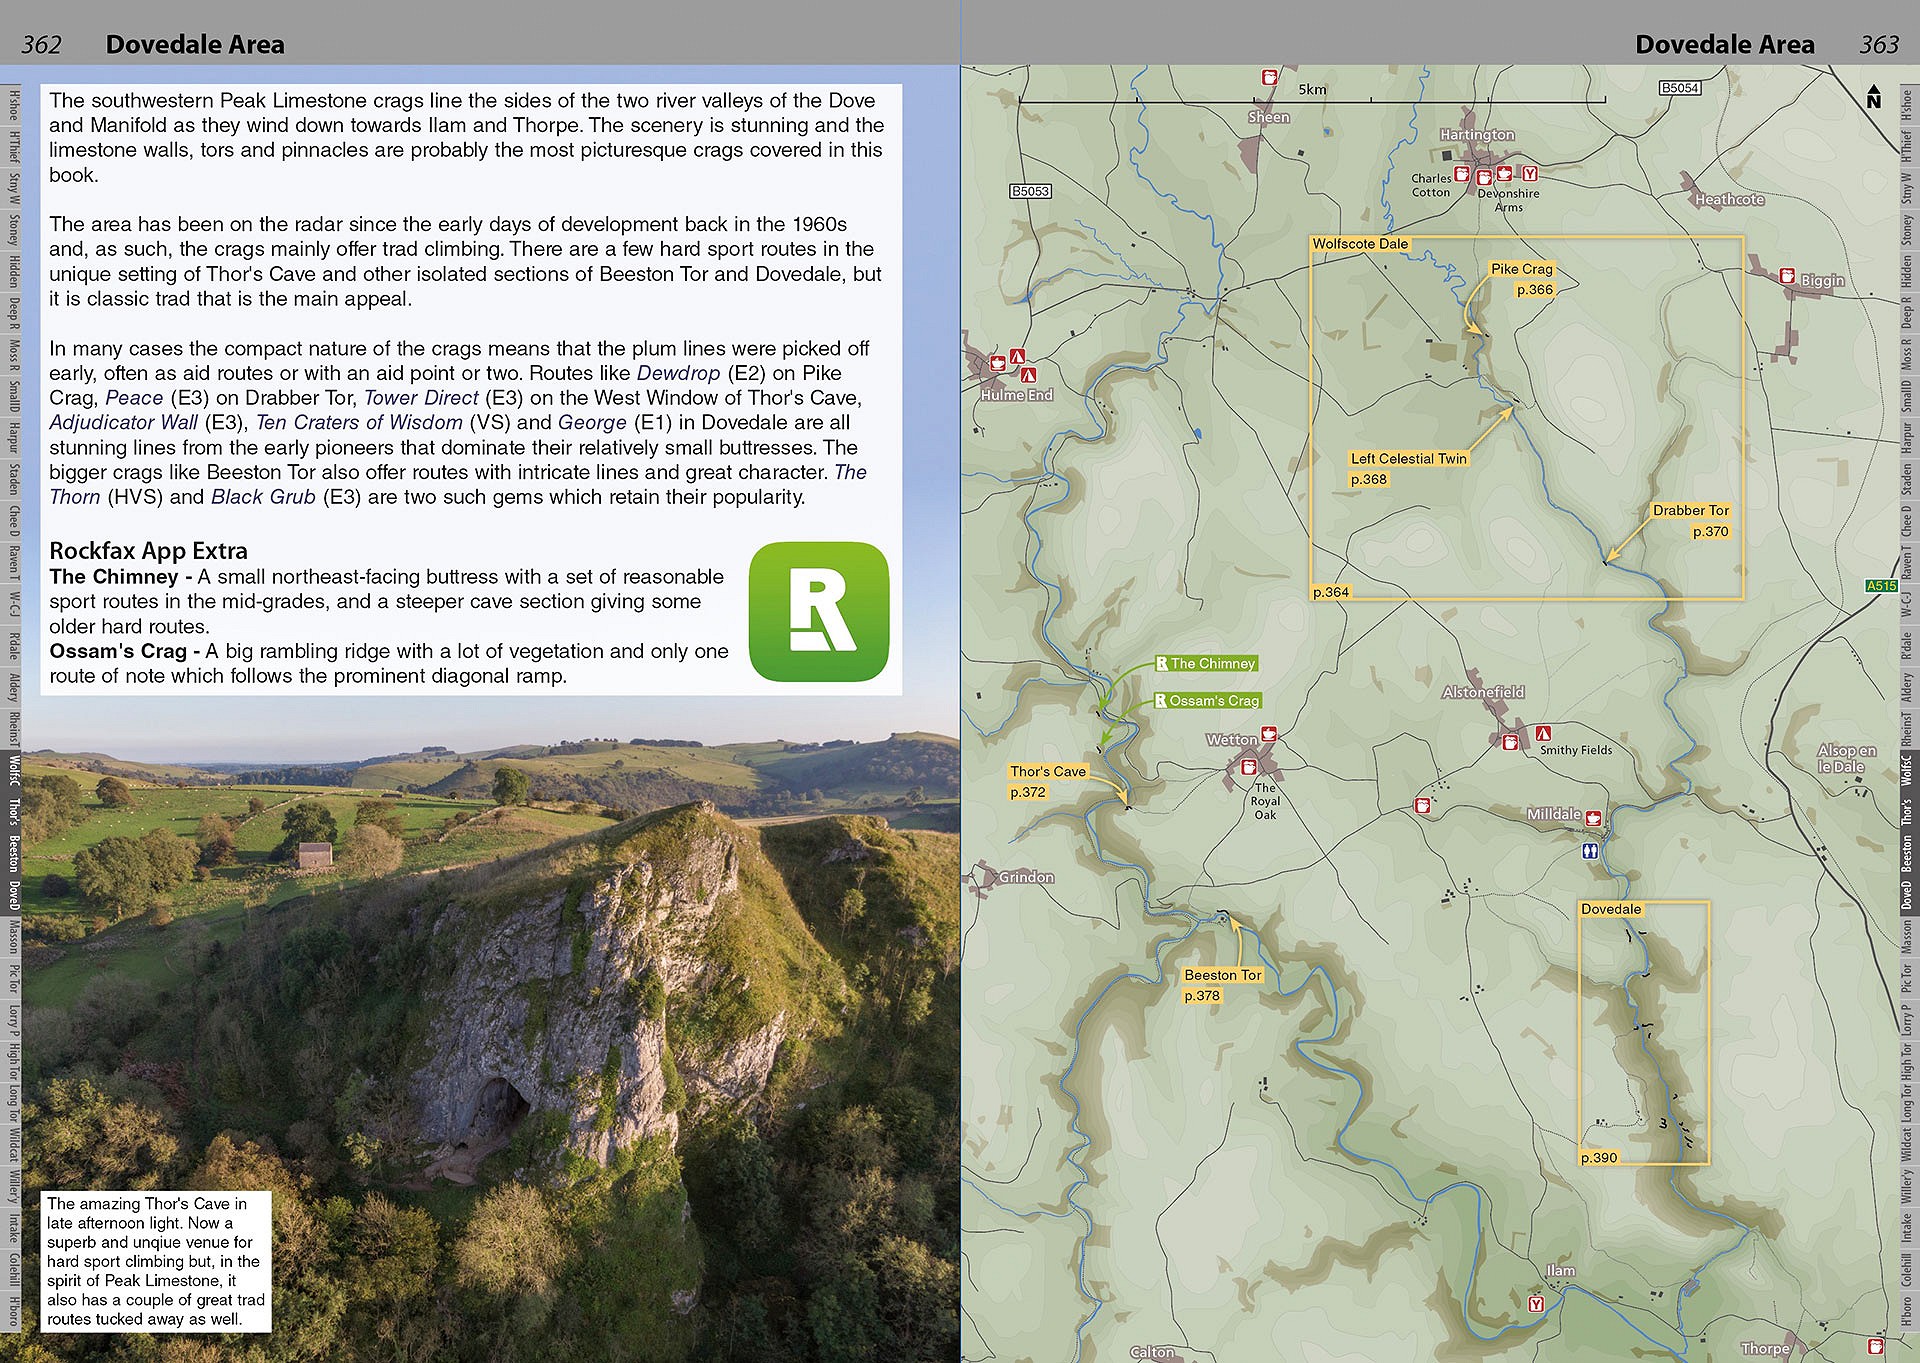 Peak Limestone Rockfax example page - Dovedale area map  © Rockfax